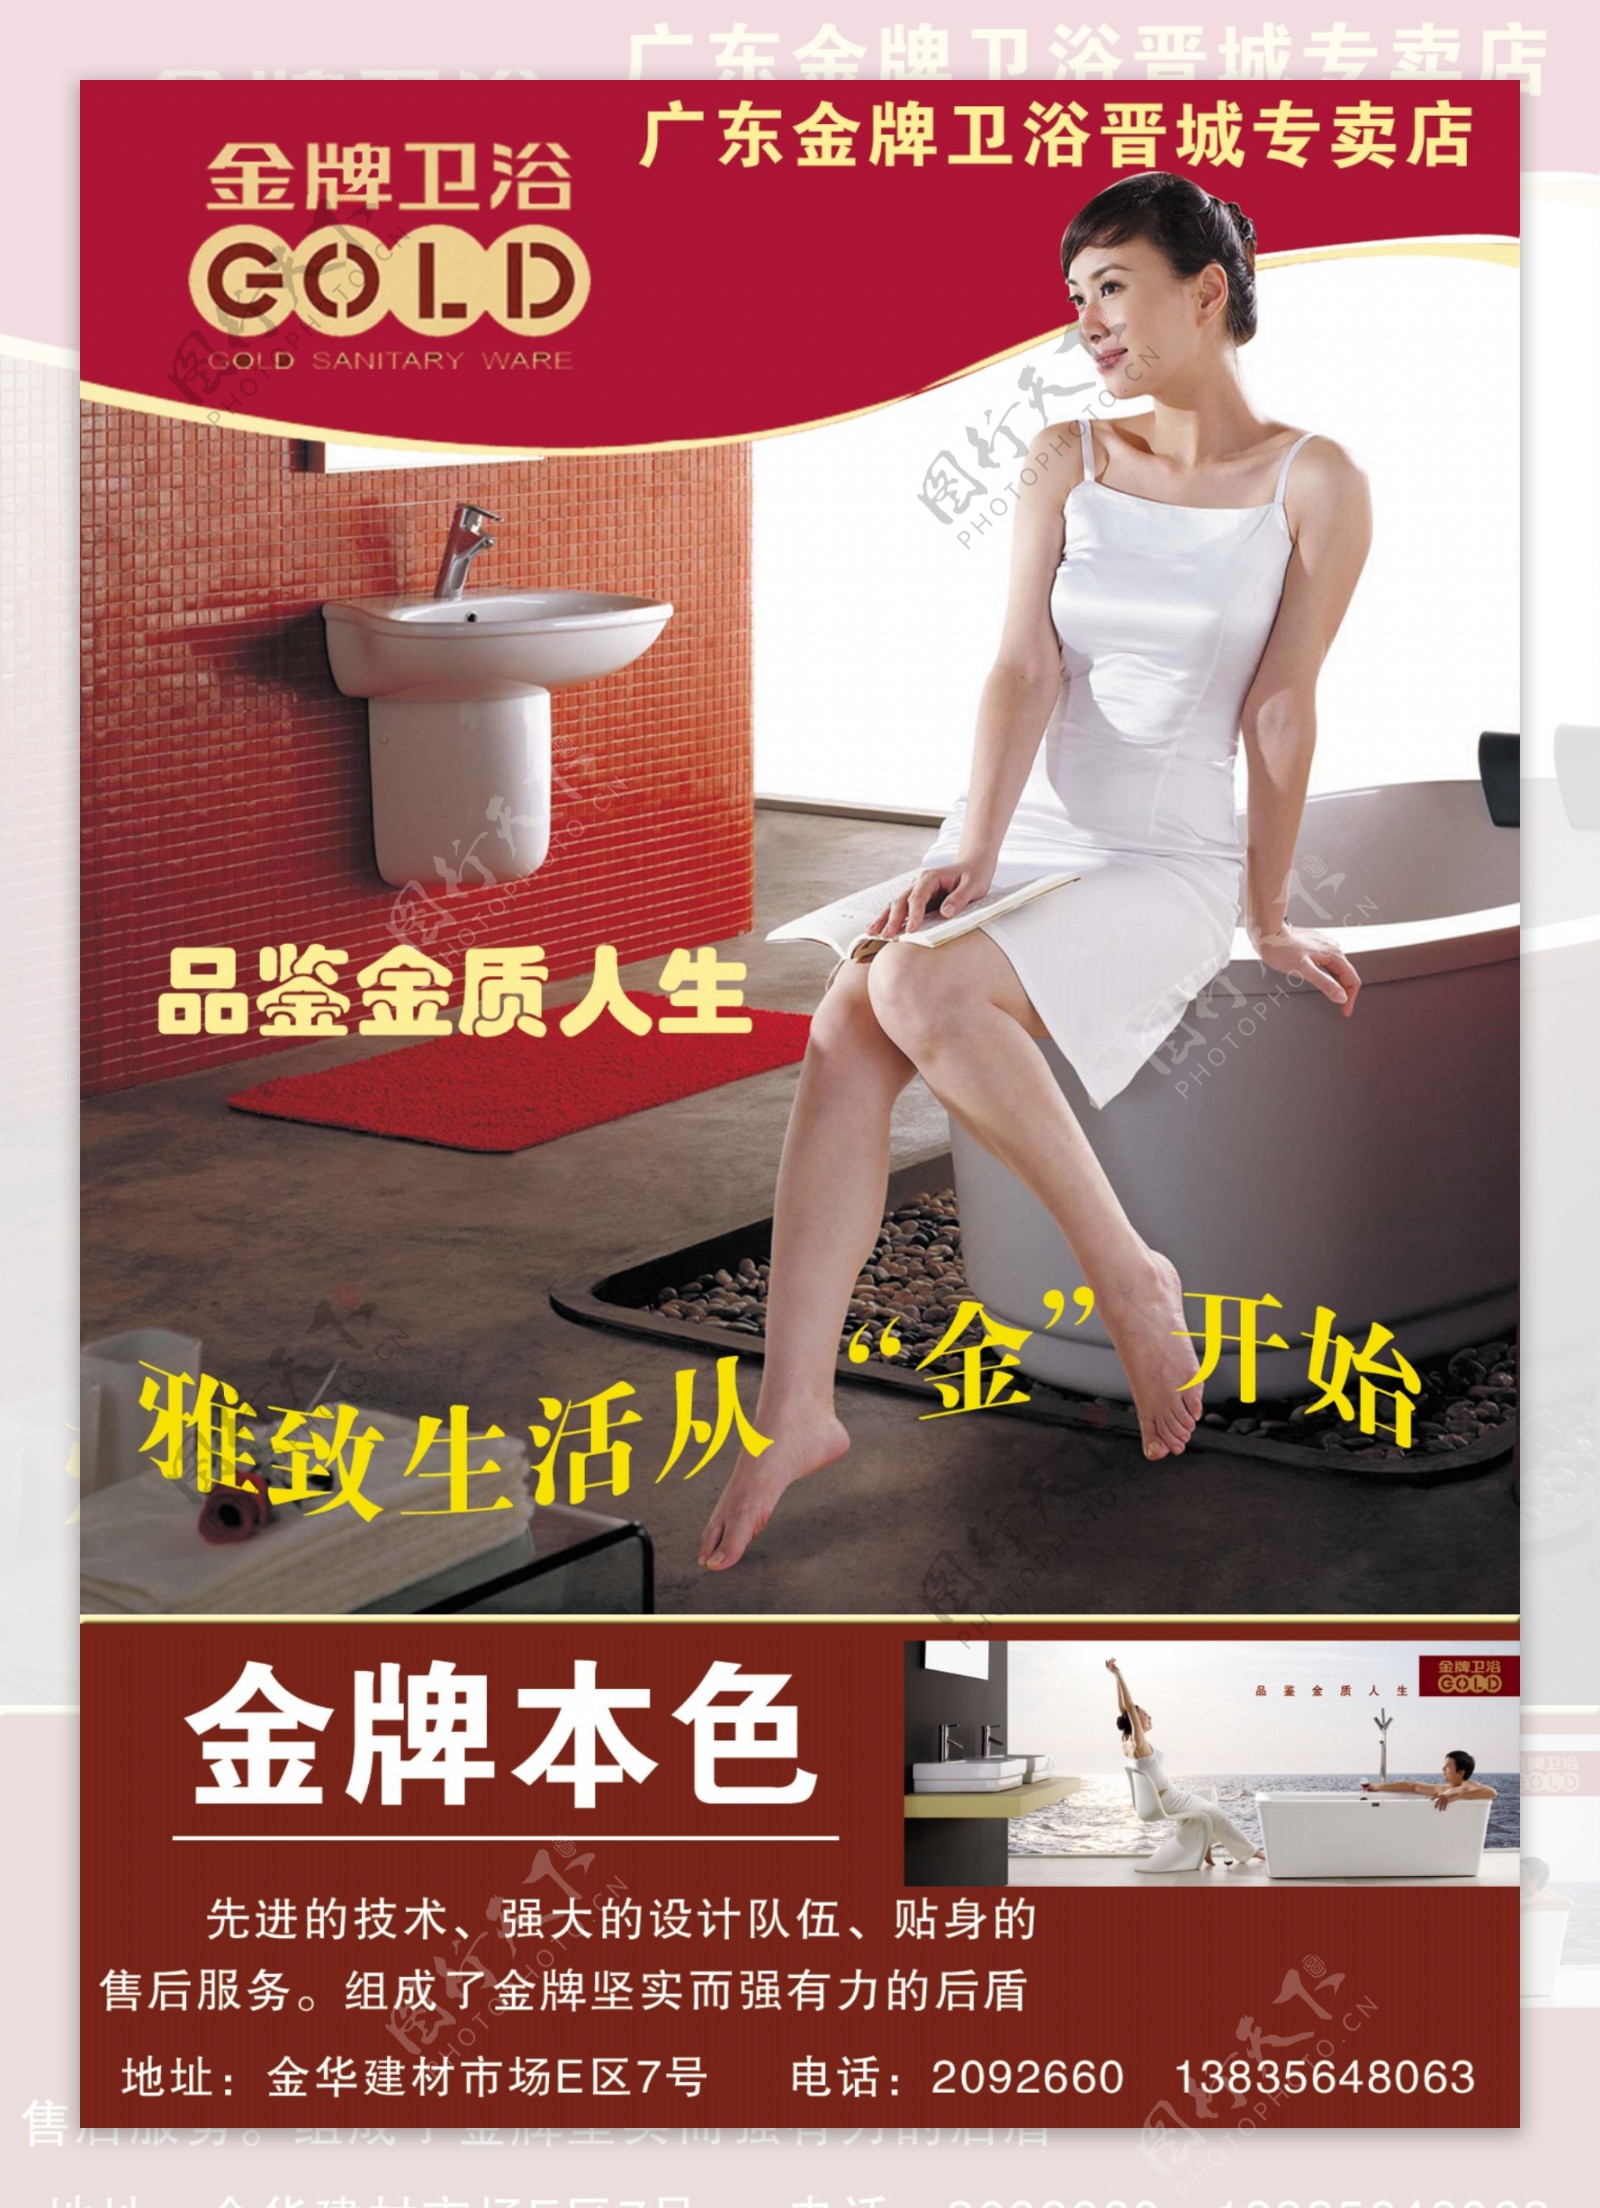 广东金牌卫浴广告图片